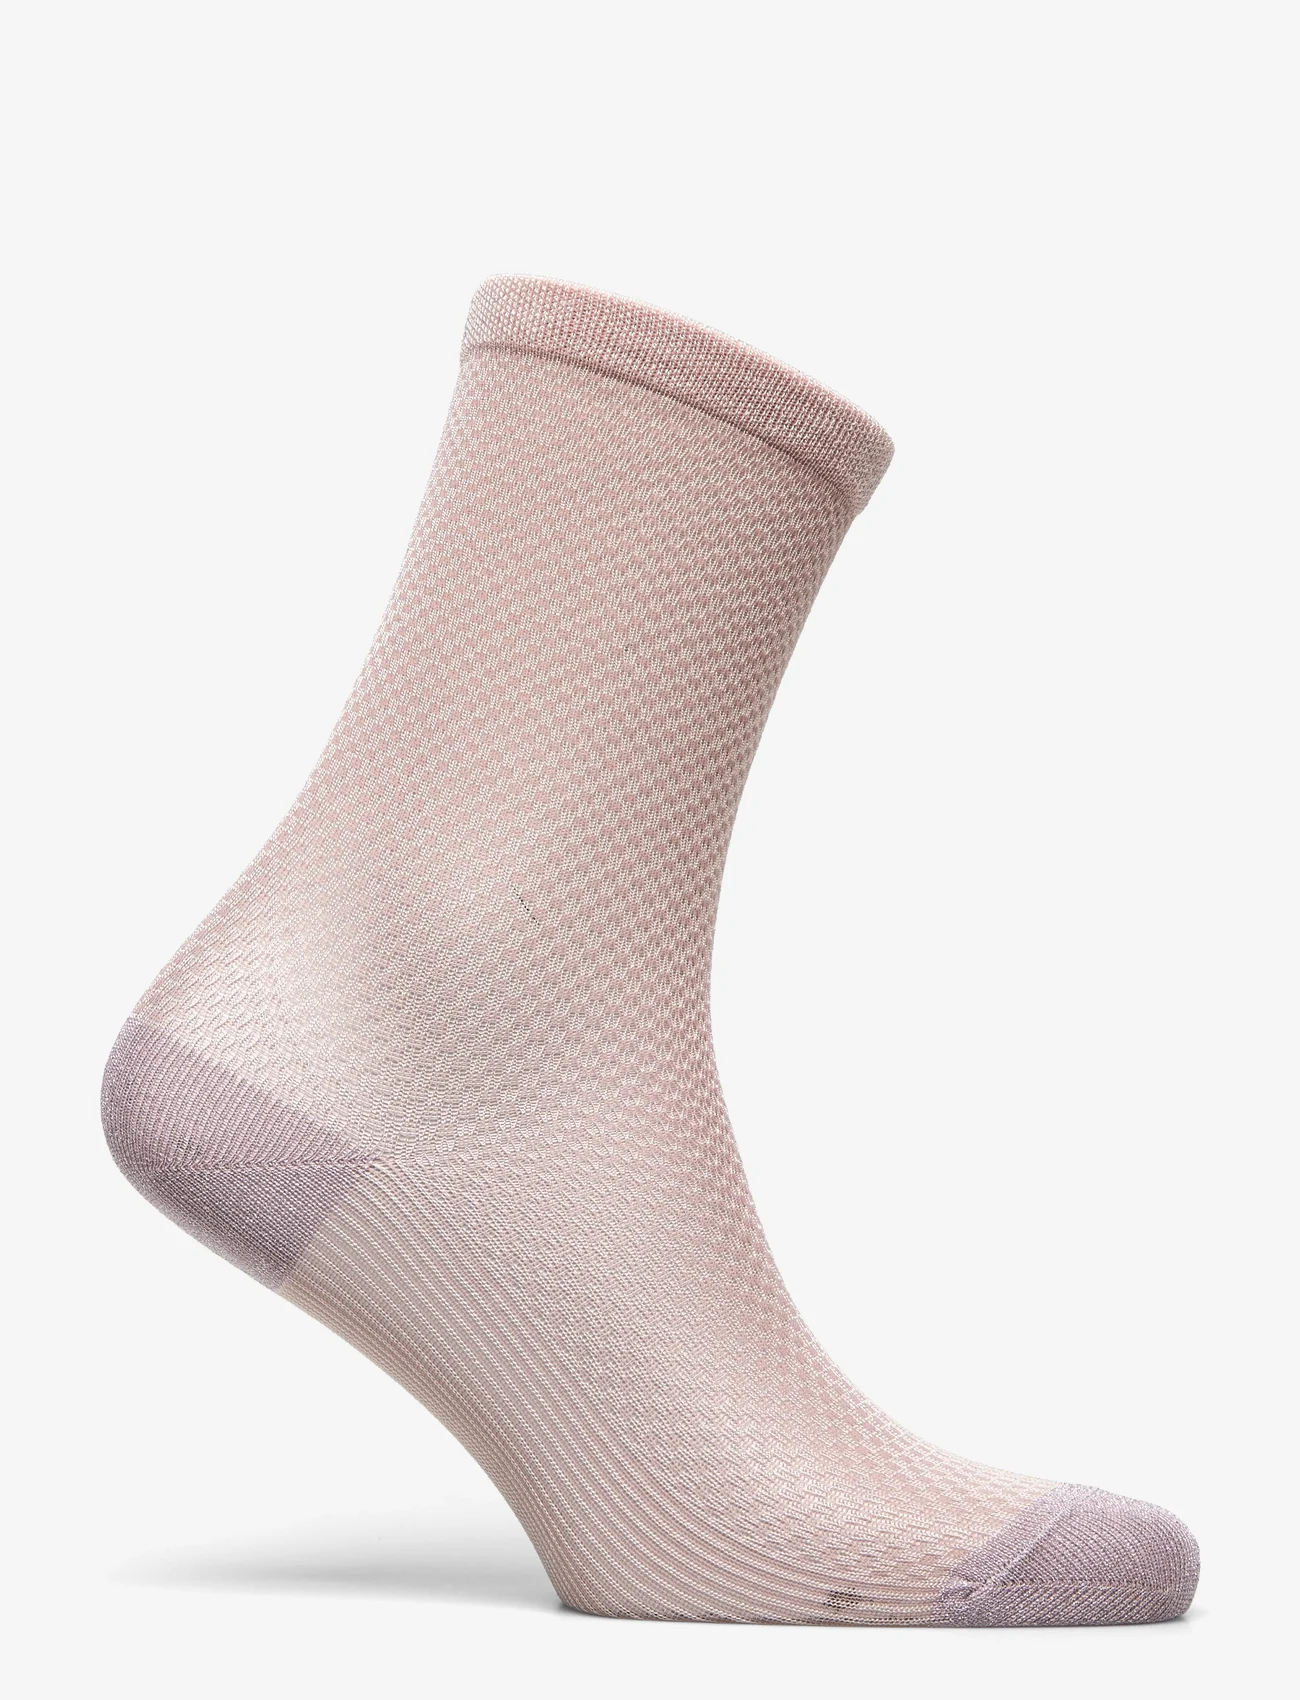 mp Denmark - Haven socks - rose dust - 1